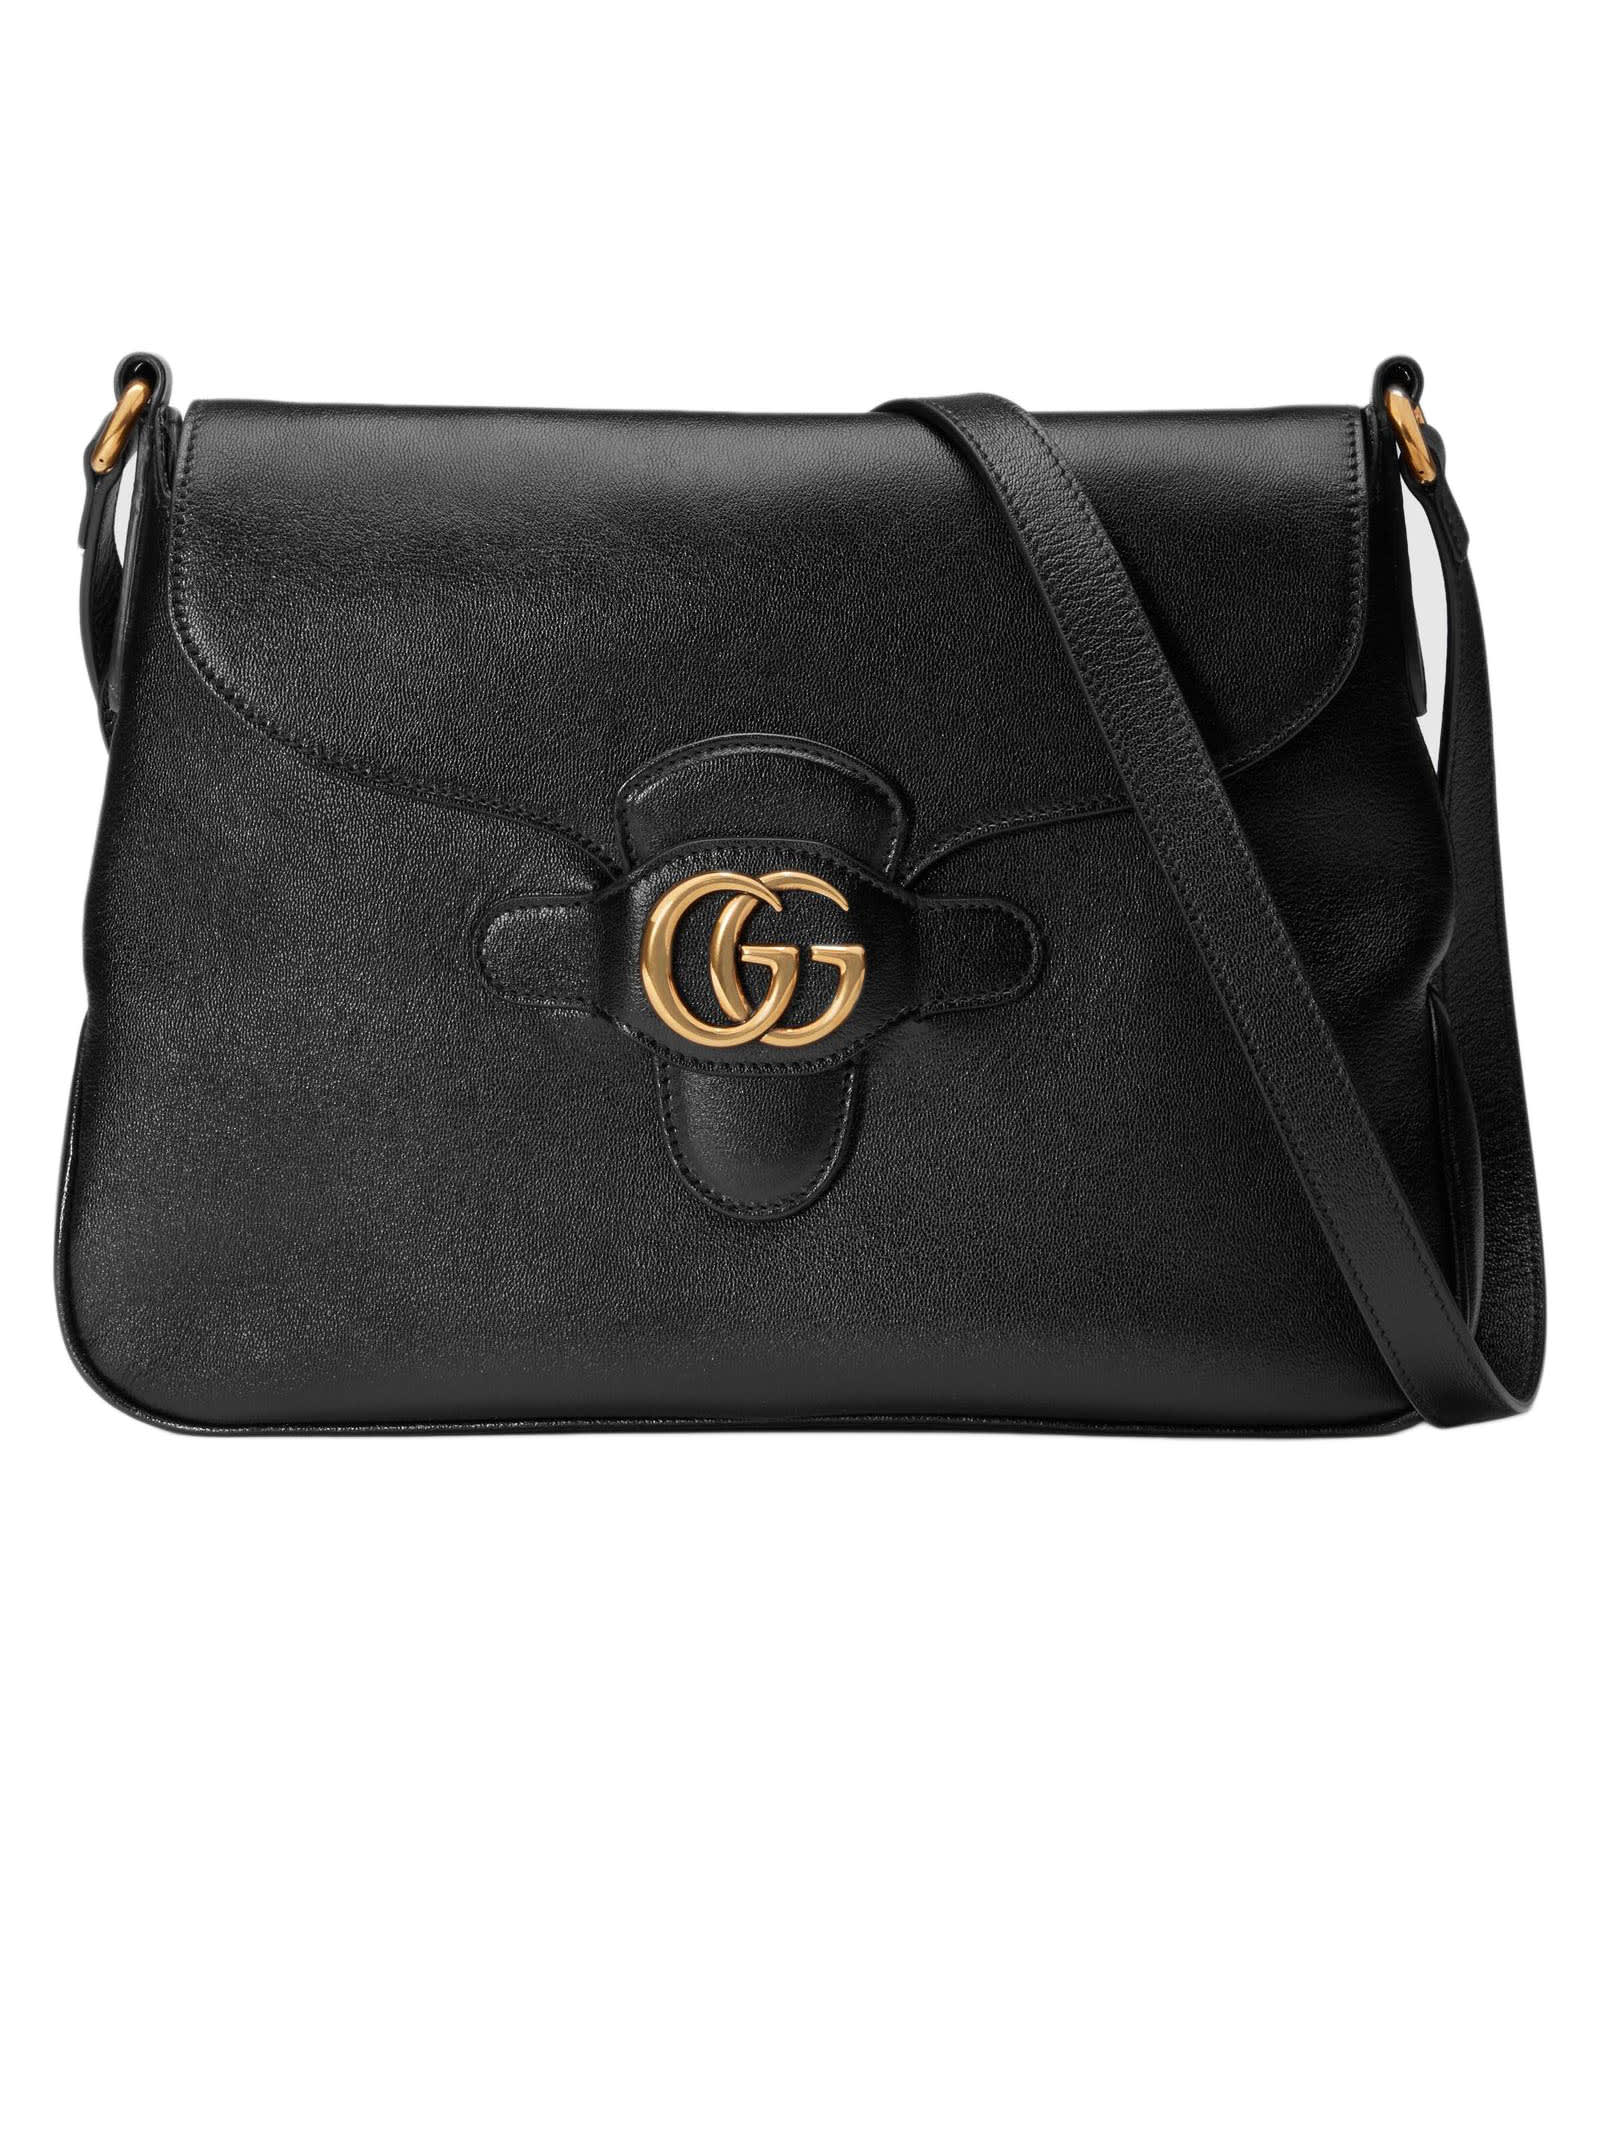 Gucci Black Leather Messenger Bag